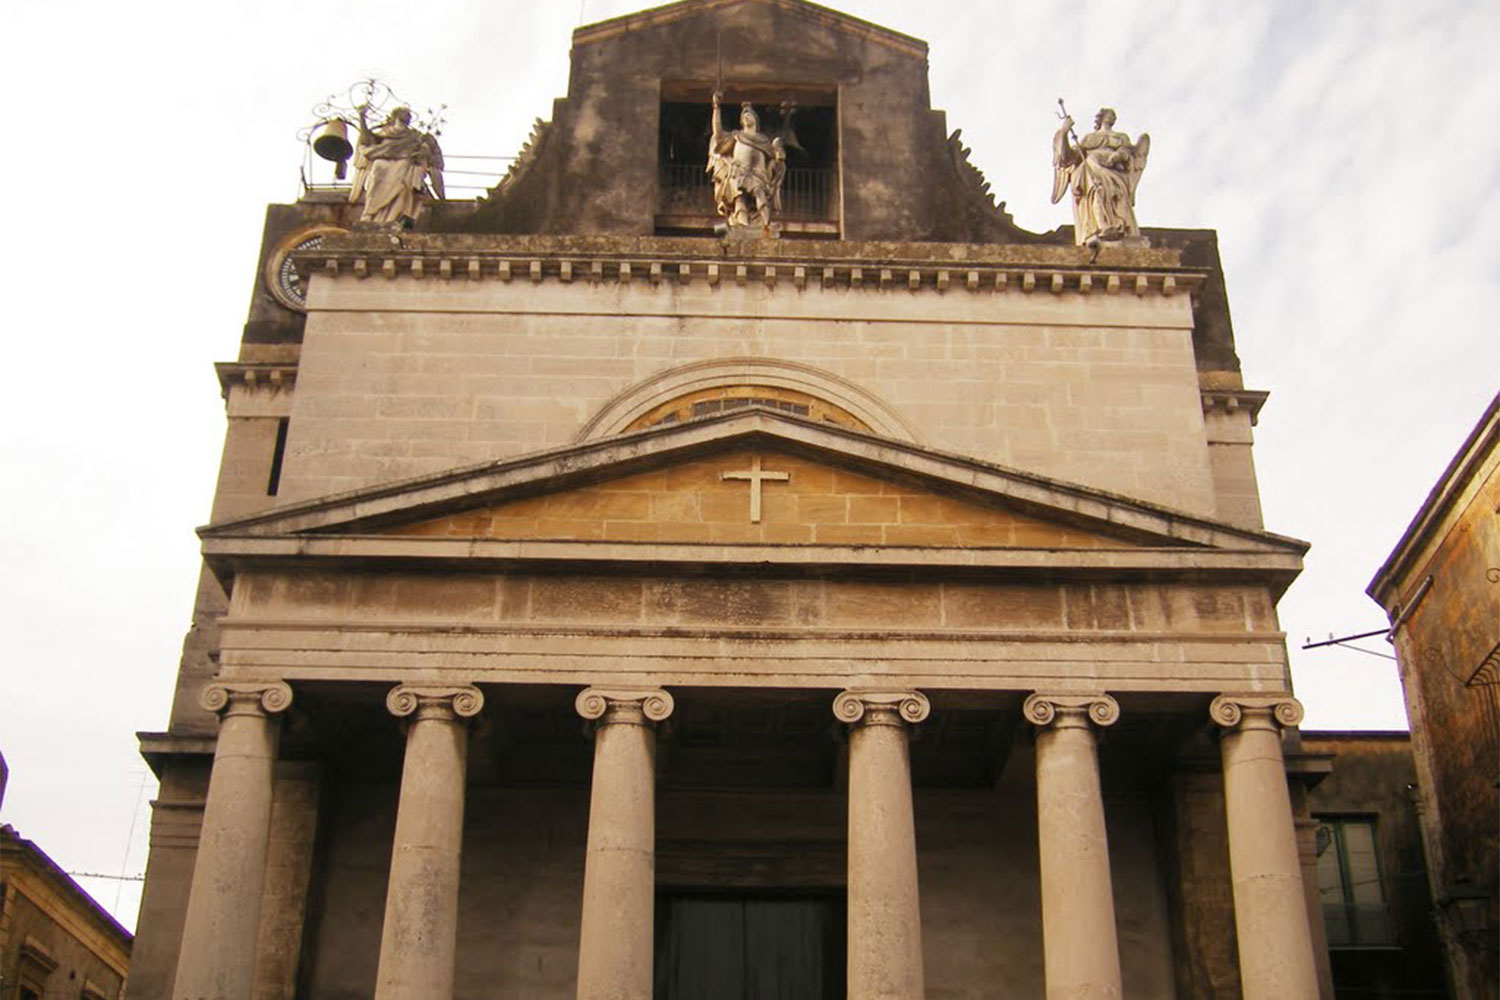 La Chiesa di San Michele